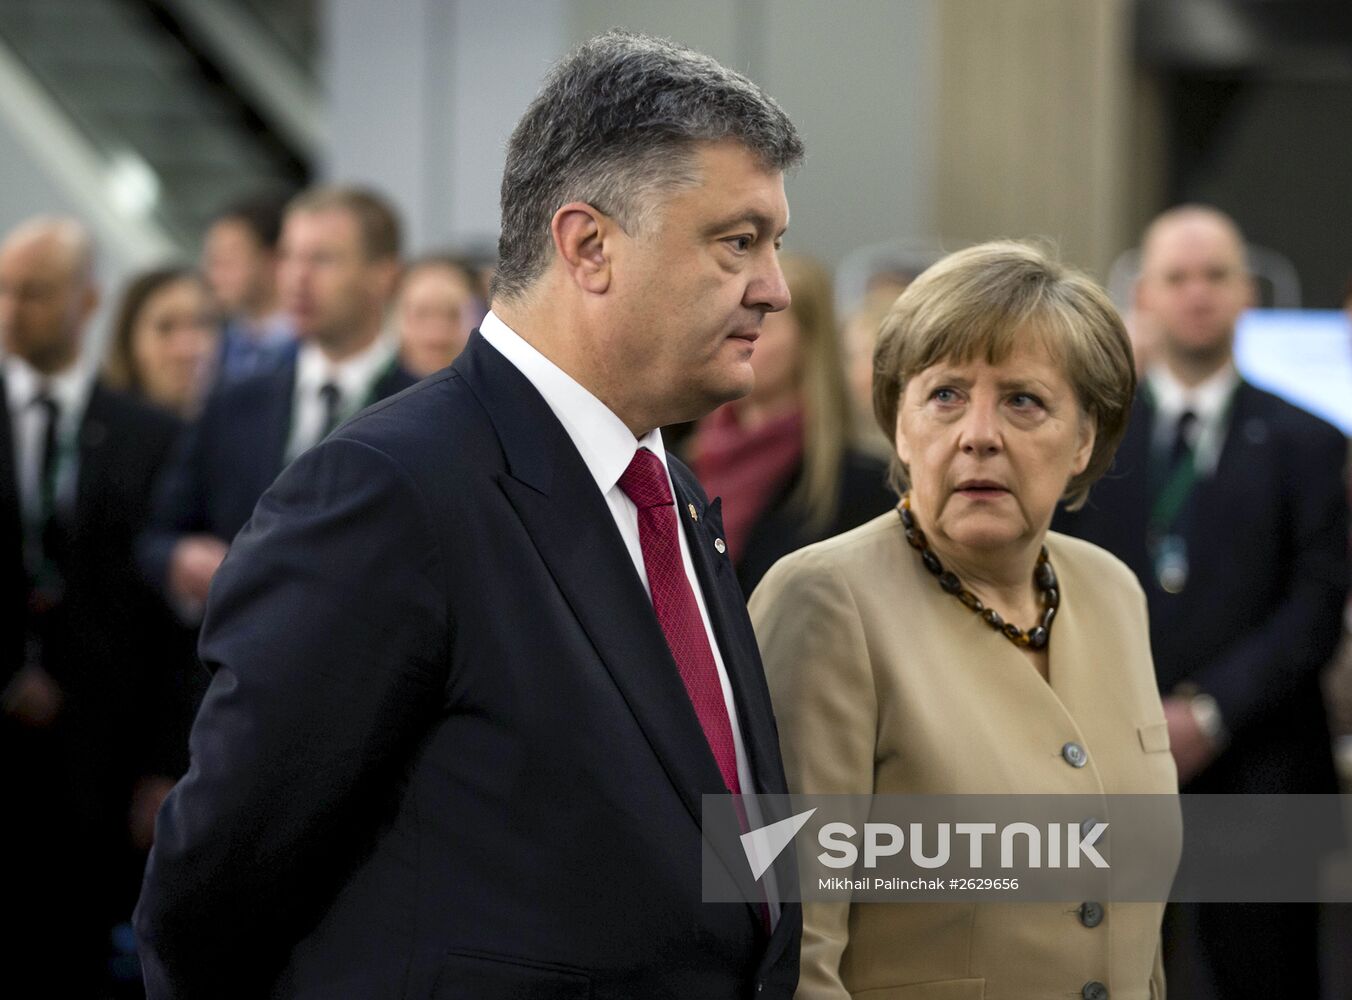 Ukraine's President Poroshenko visits Latvia